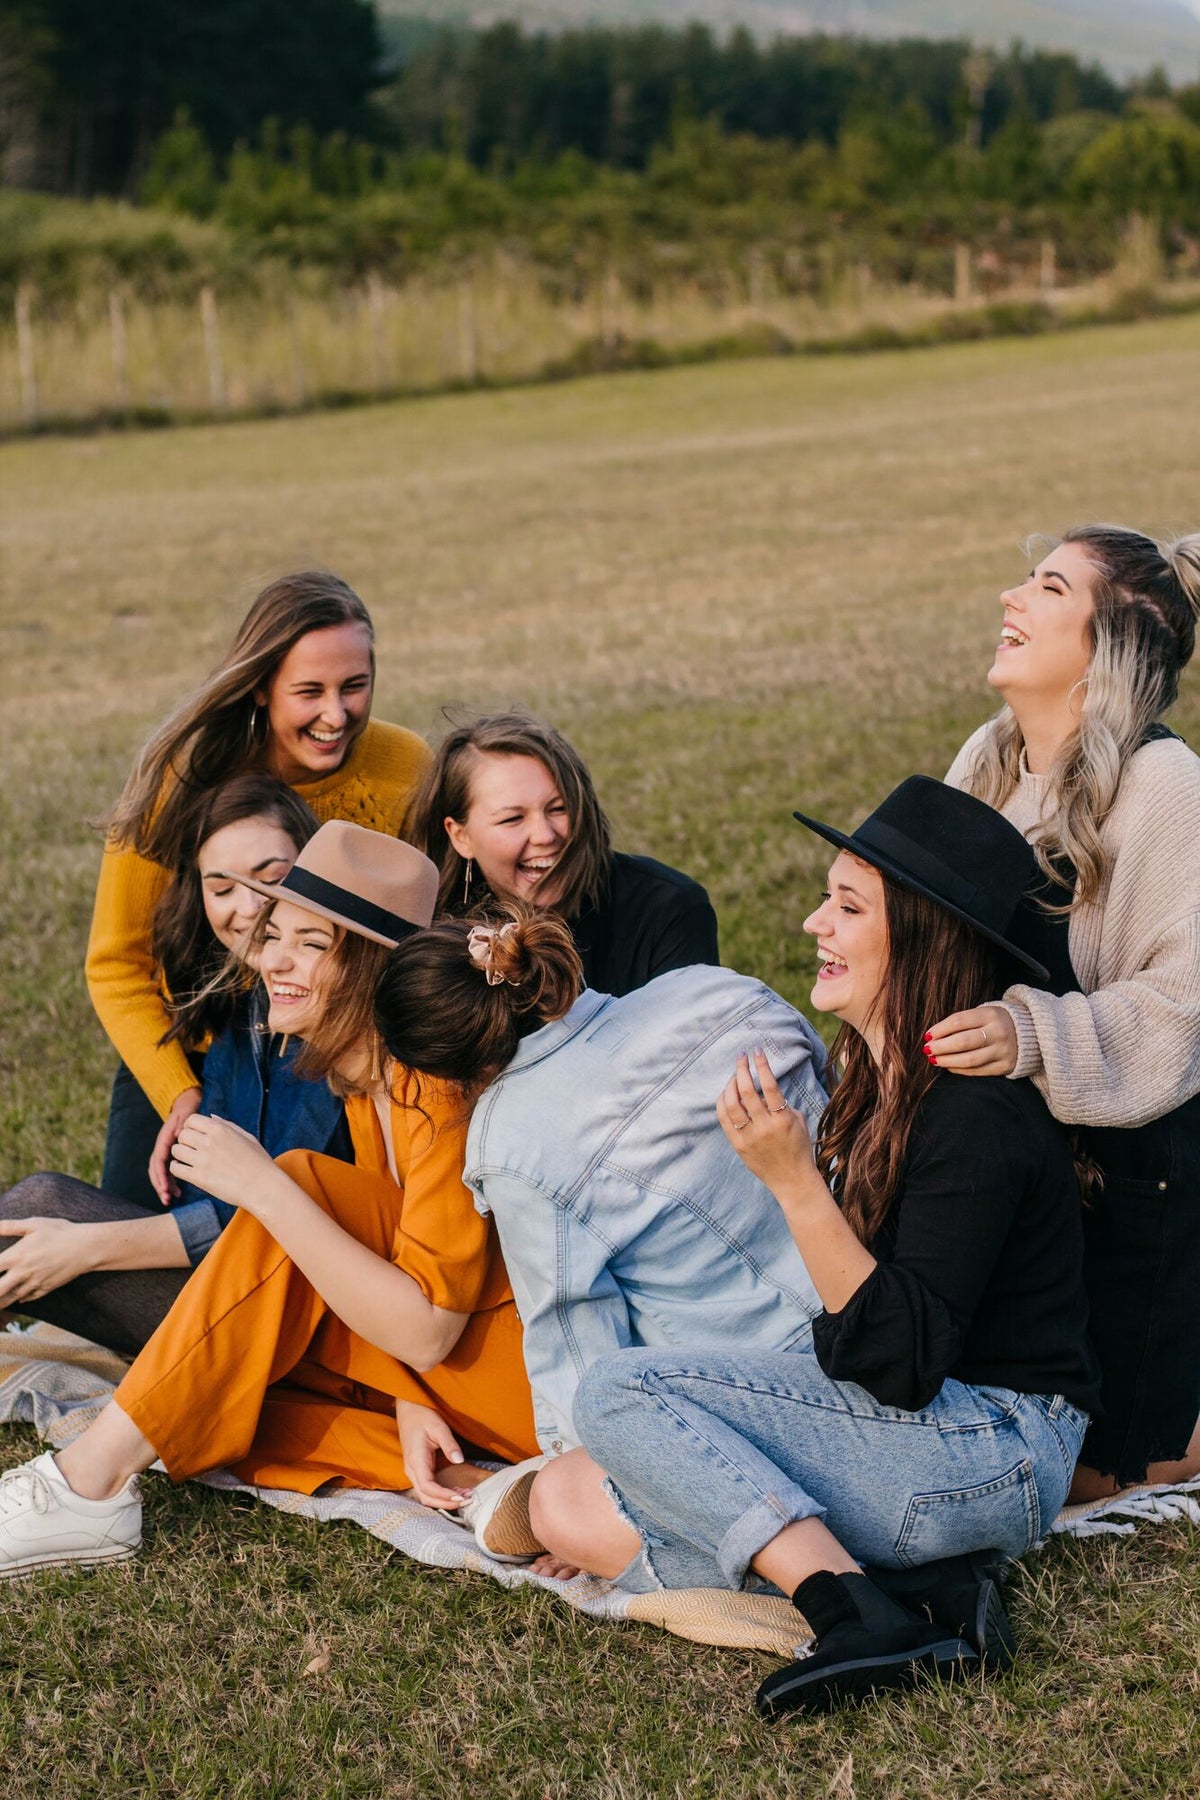 Frauen sitzen auf einer Picknickdecke und lachen